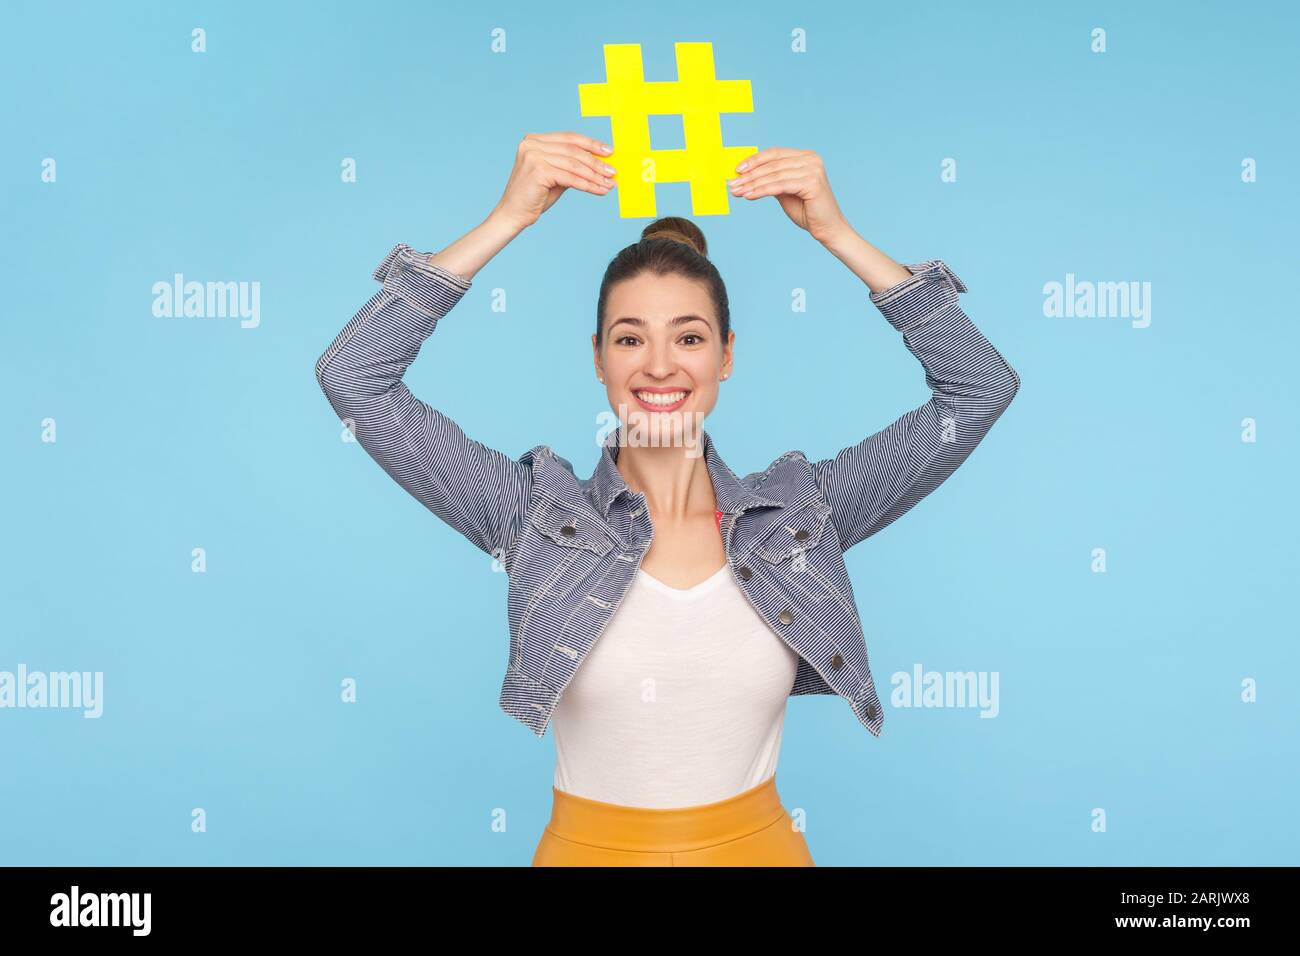 Jolie fille joyeuse avec un petit pain dans un ensemble élégant tenant le grand symbole hashtag jaune sur la tête et souriant à l'appareil photo, signe de hachage des médias sociaux, bloggi Banque D'Images